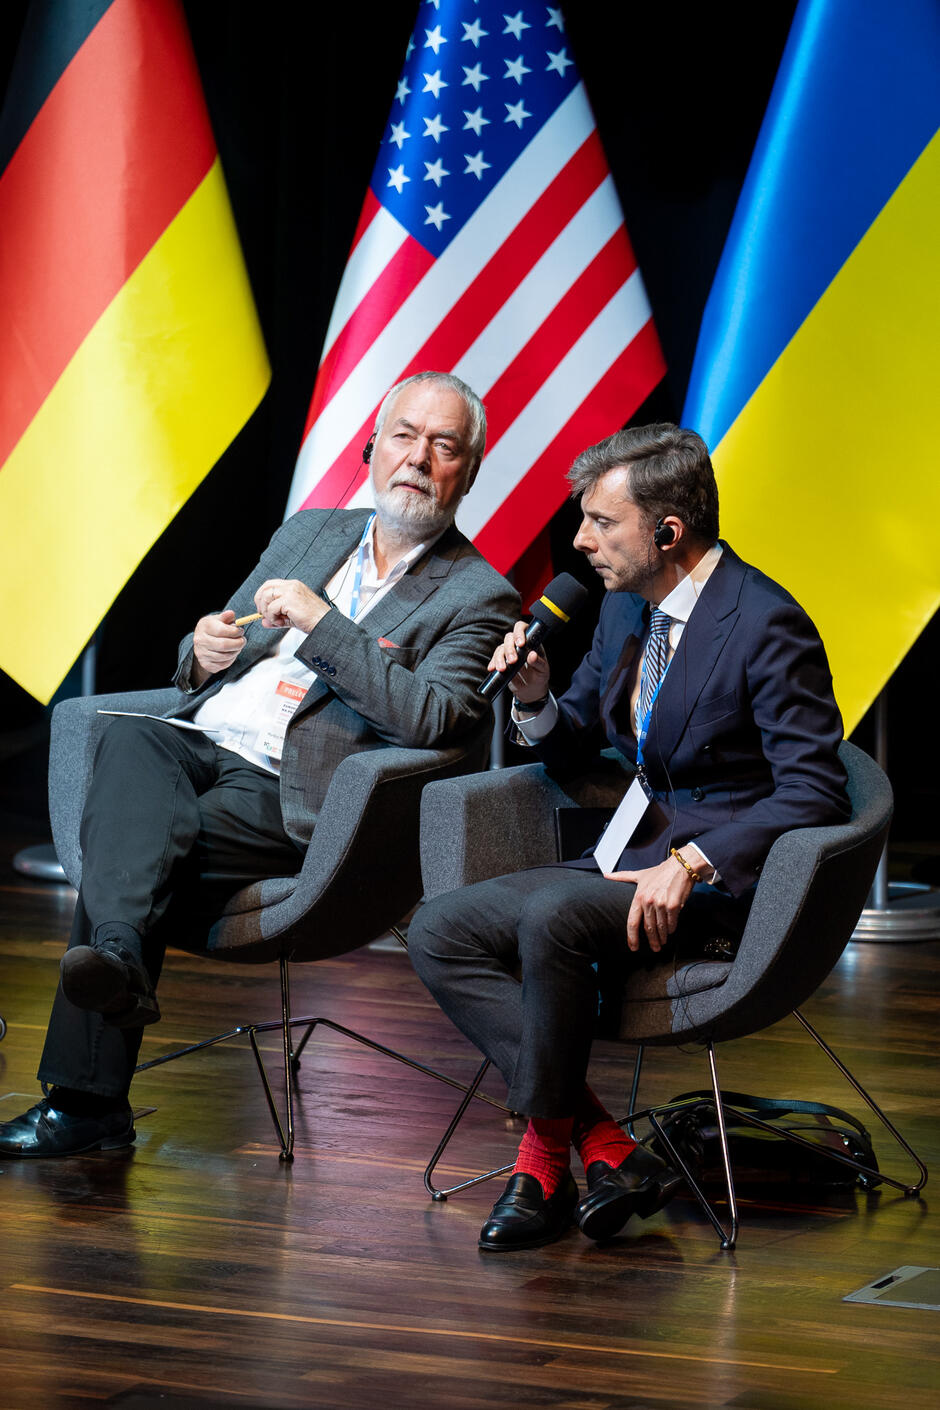 Na zdjęciu widzimy dwóch mężczyzn siedzących na scenie przed flagami Niemiec, Stanów Zjednoczonych i Ukrainy. Starszy mężczyzna po lewej stronie ma siwe włosy i brodę, trzyma w ręku mikrofon, a młodszy mężczyzna po prawej stronie, w ciemnym garniturze i czerwonych skarpetkach, również trzyma mikrofon i przemawia.